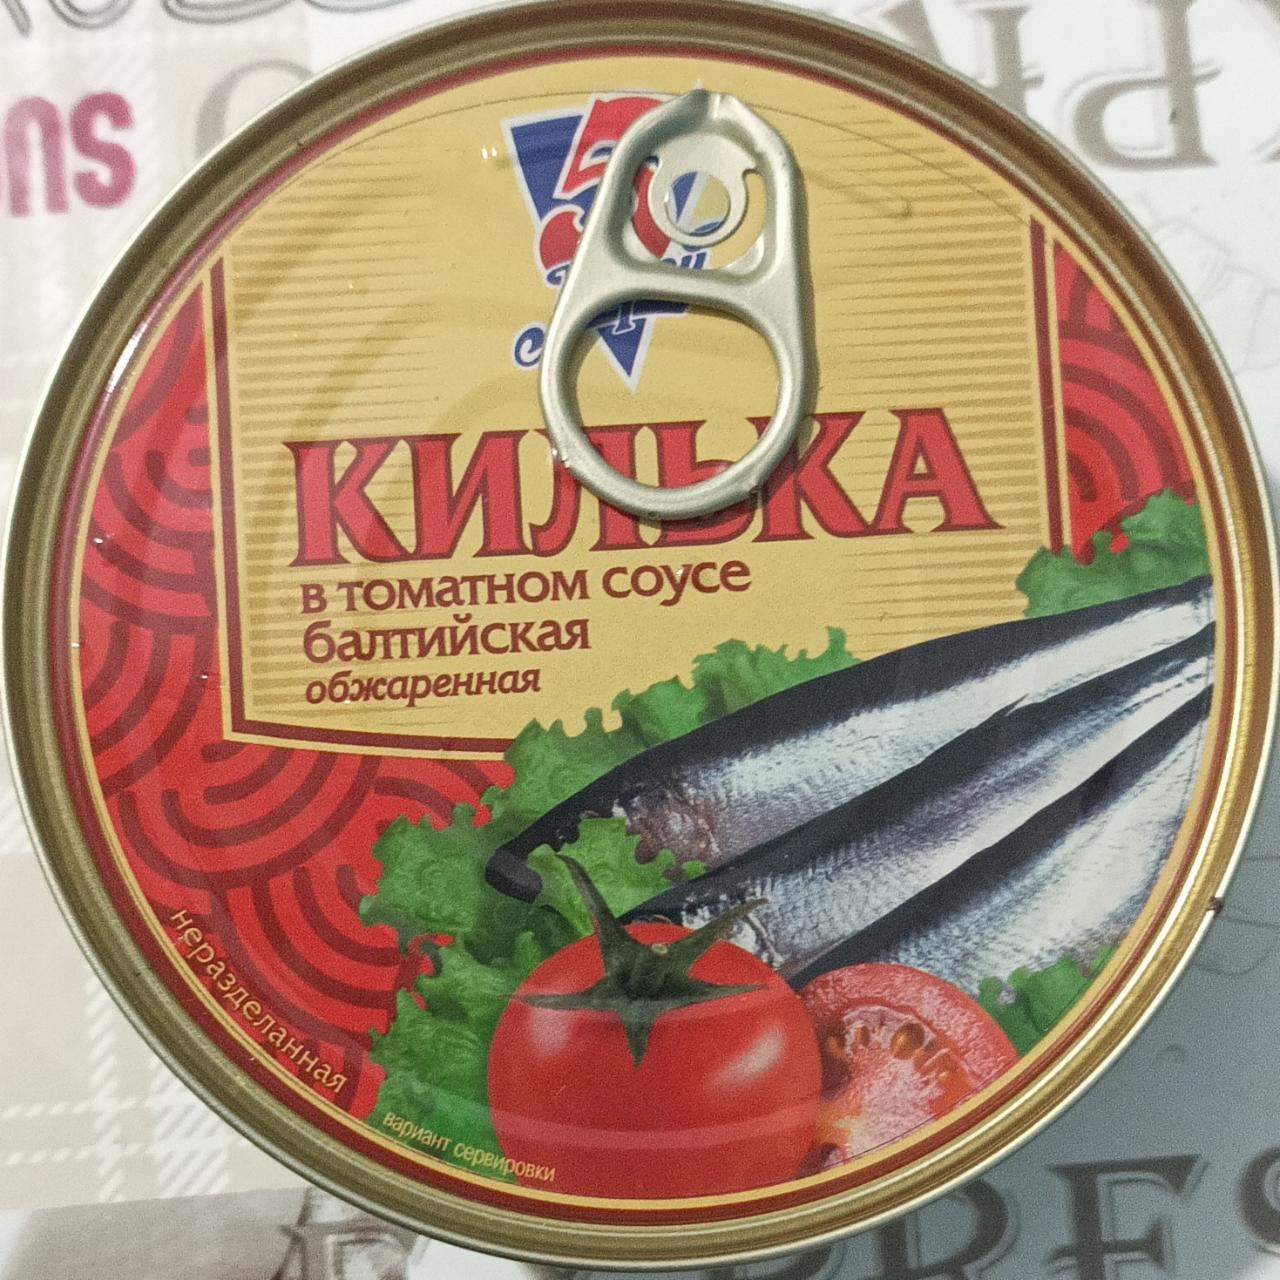 Фото - Килька балтийская в томатном соусе обжаренная 5 морей